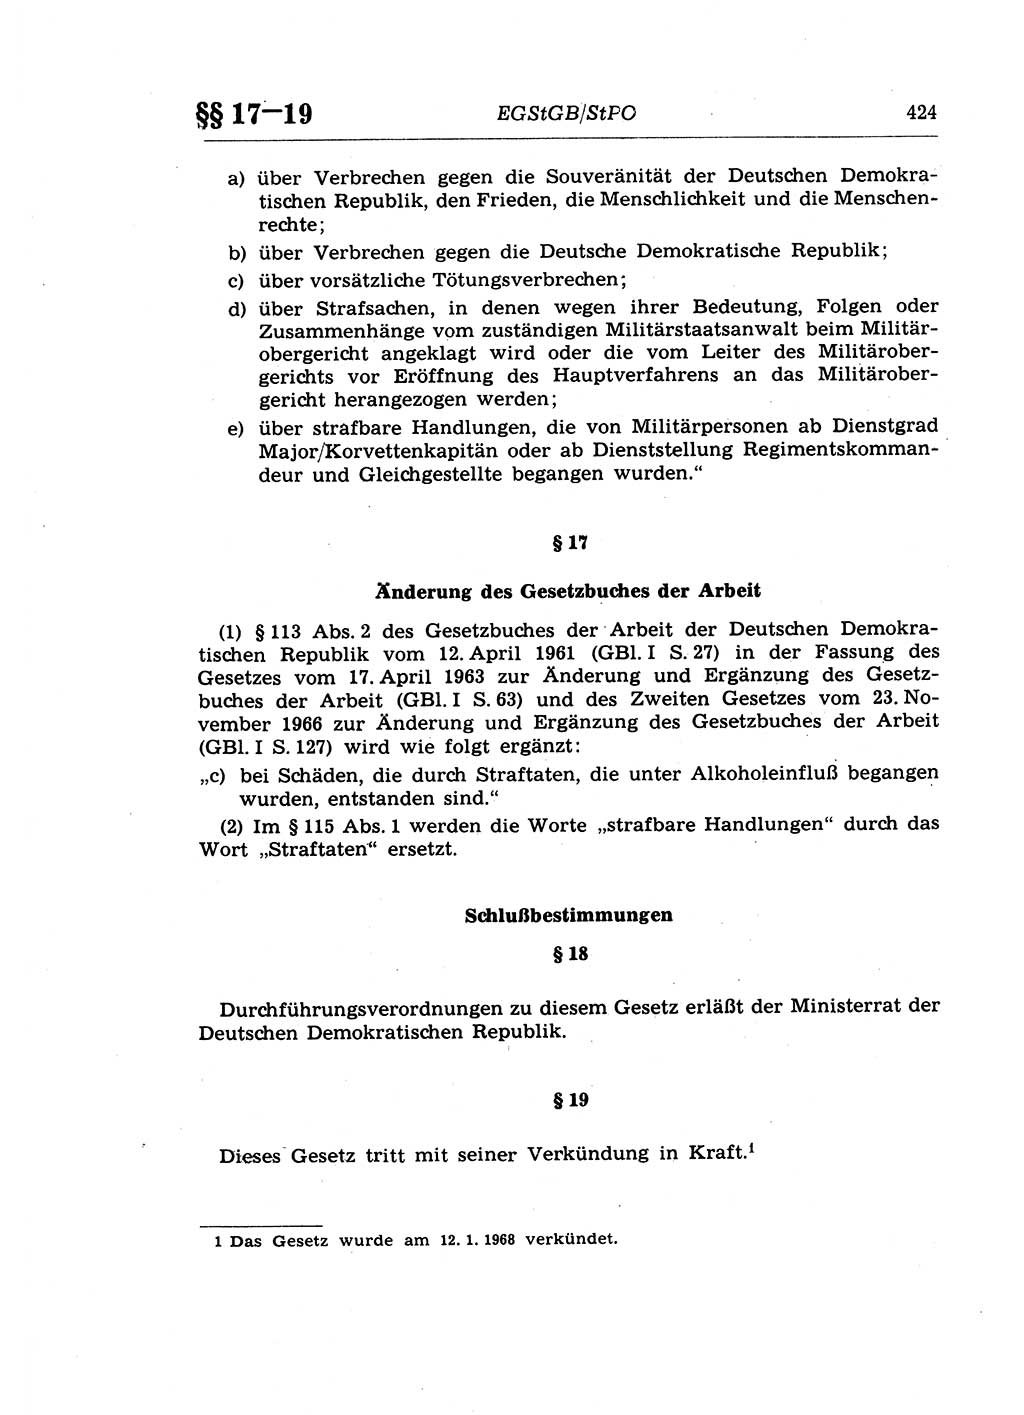 Strafprozeßrecht der DDR (Deutsche Demokratische Republik), Lehrkommentar zur Strafprozeßordnung (StPO) 1968, Seite 424 (Strafprozeßr. DDR Lehrkomm. StPO 19688, S. 424)